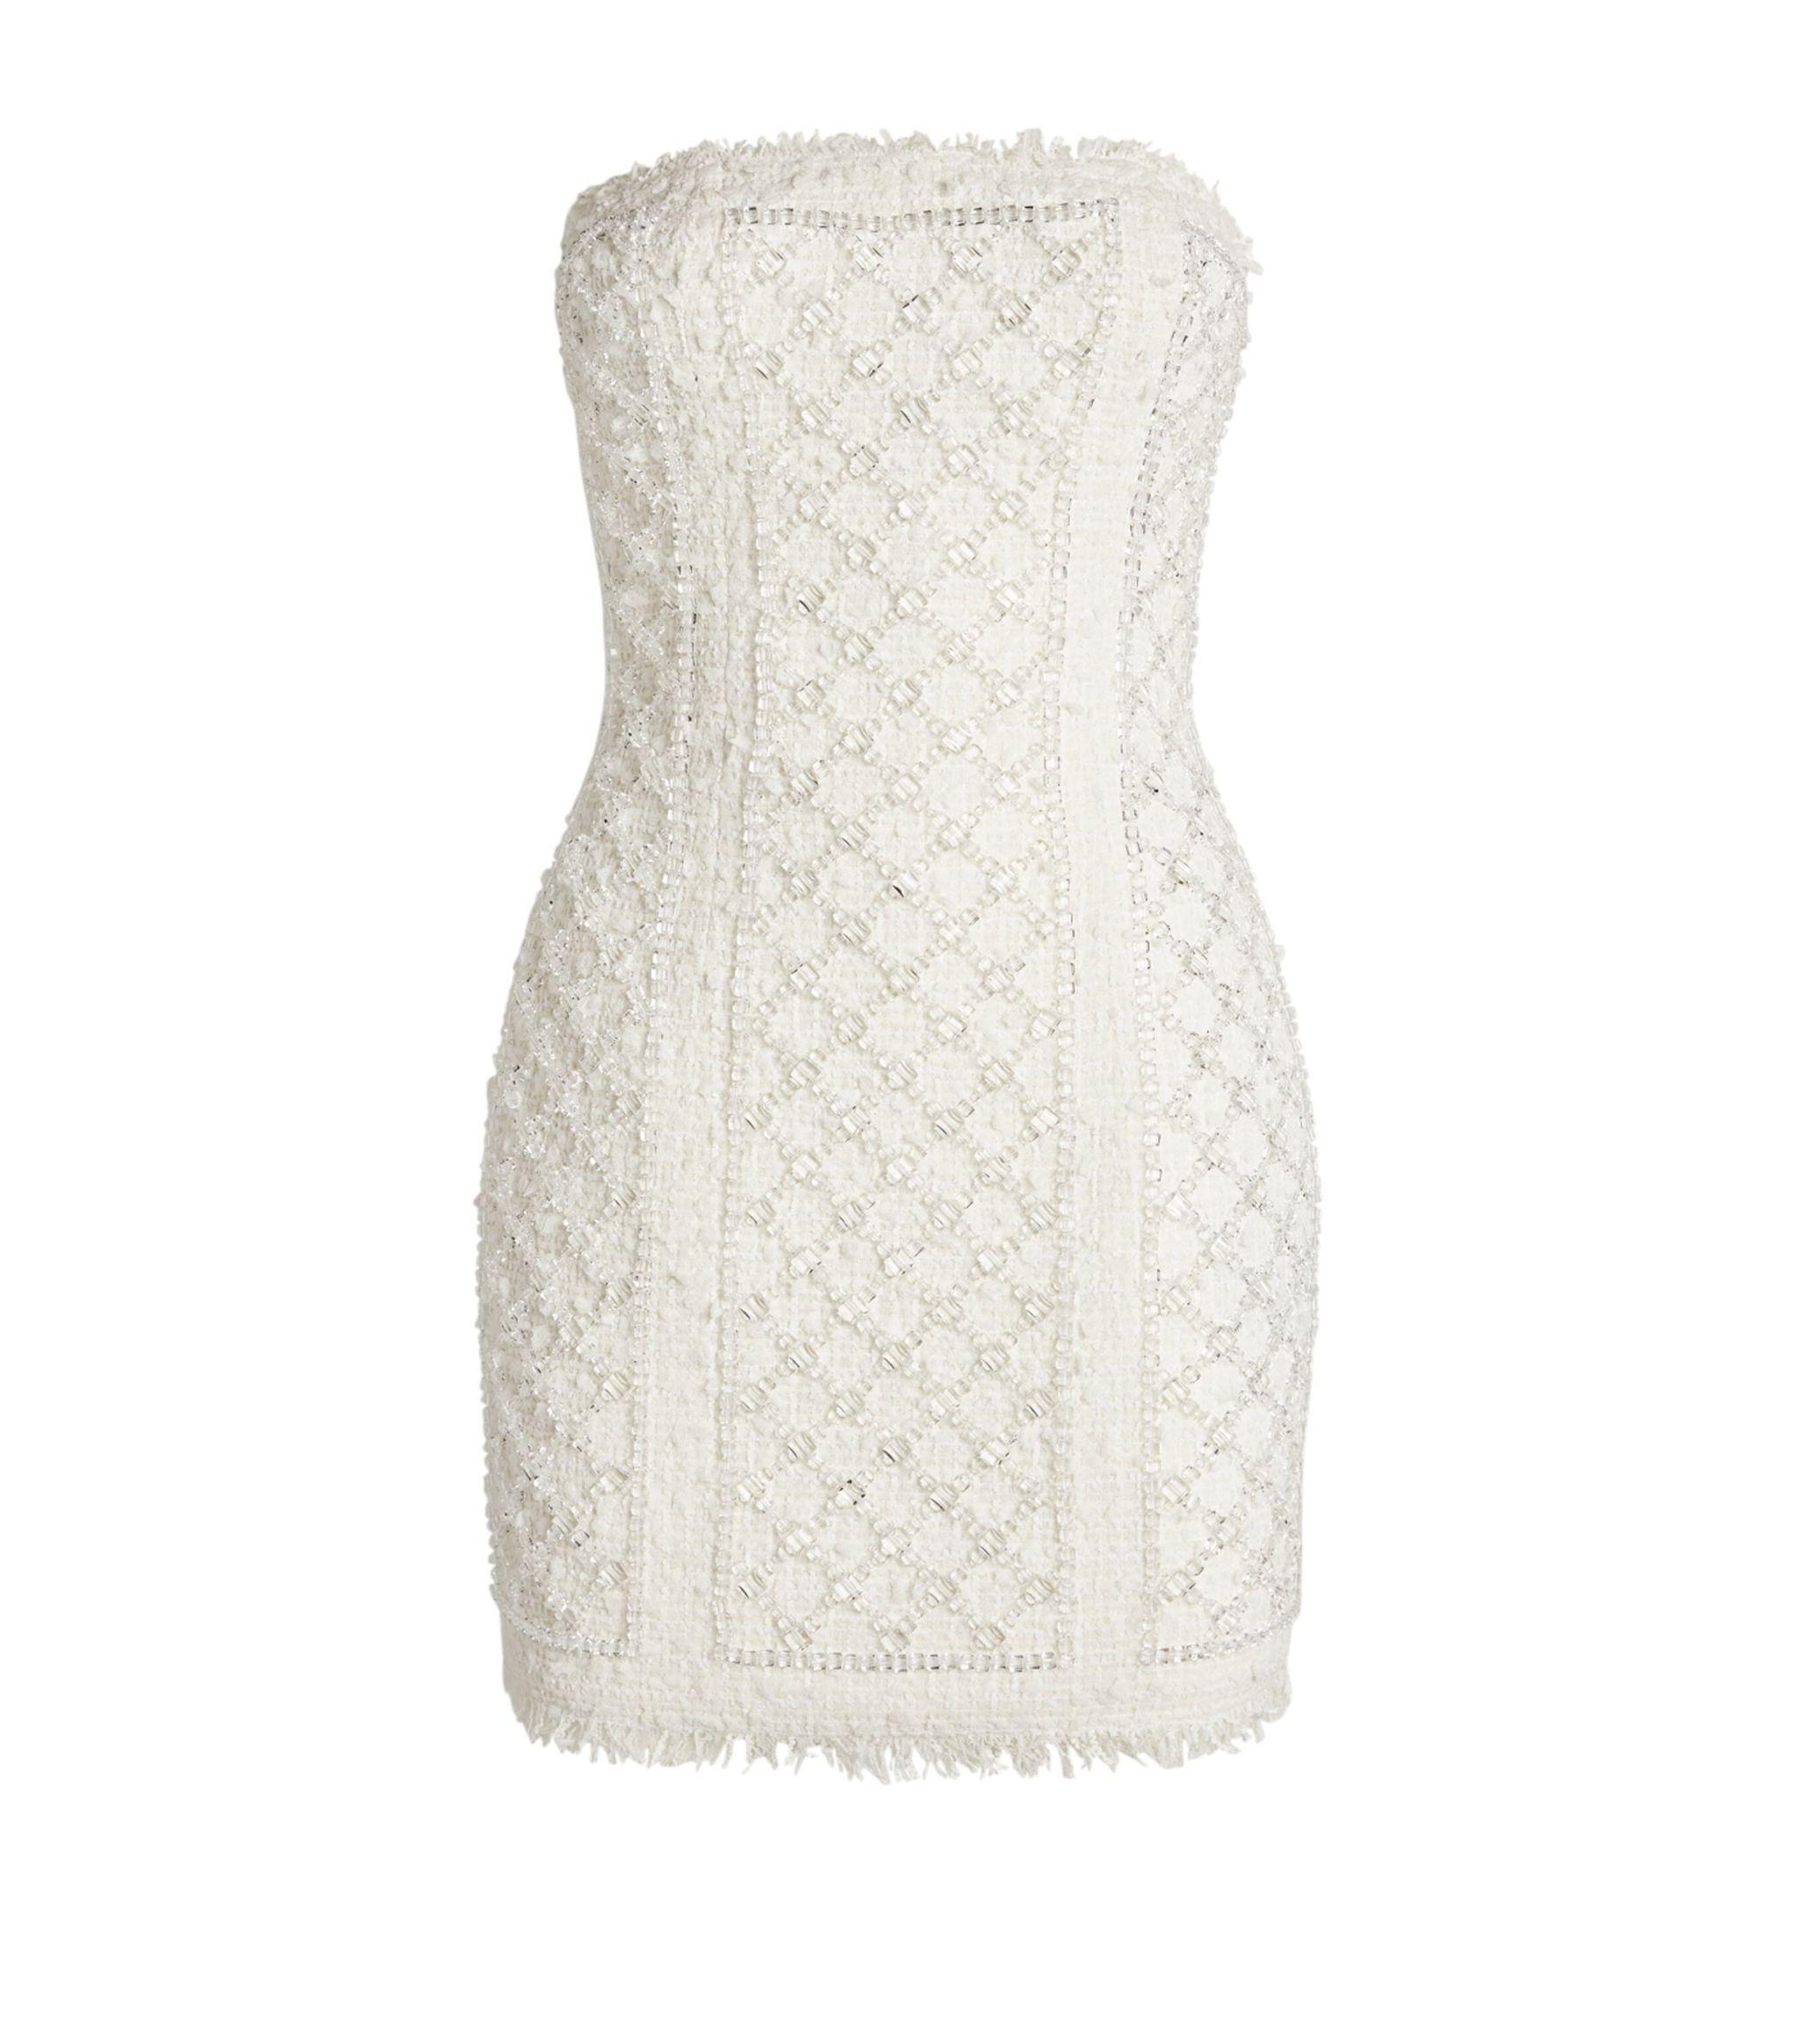 買い付け  Sサイズ white Dress Mini Tweed Classic ミニワンピース